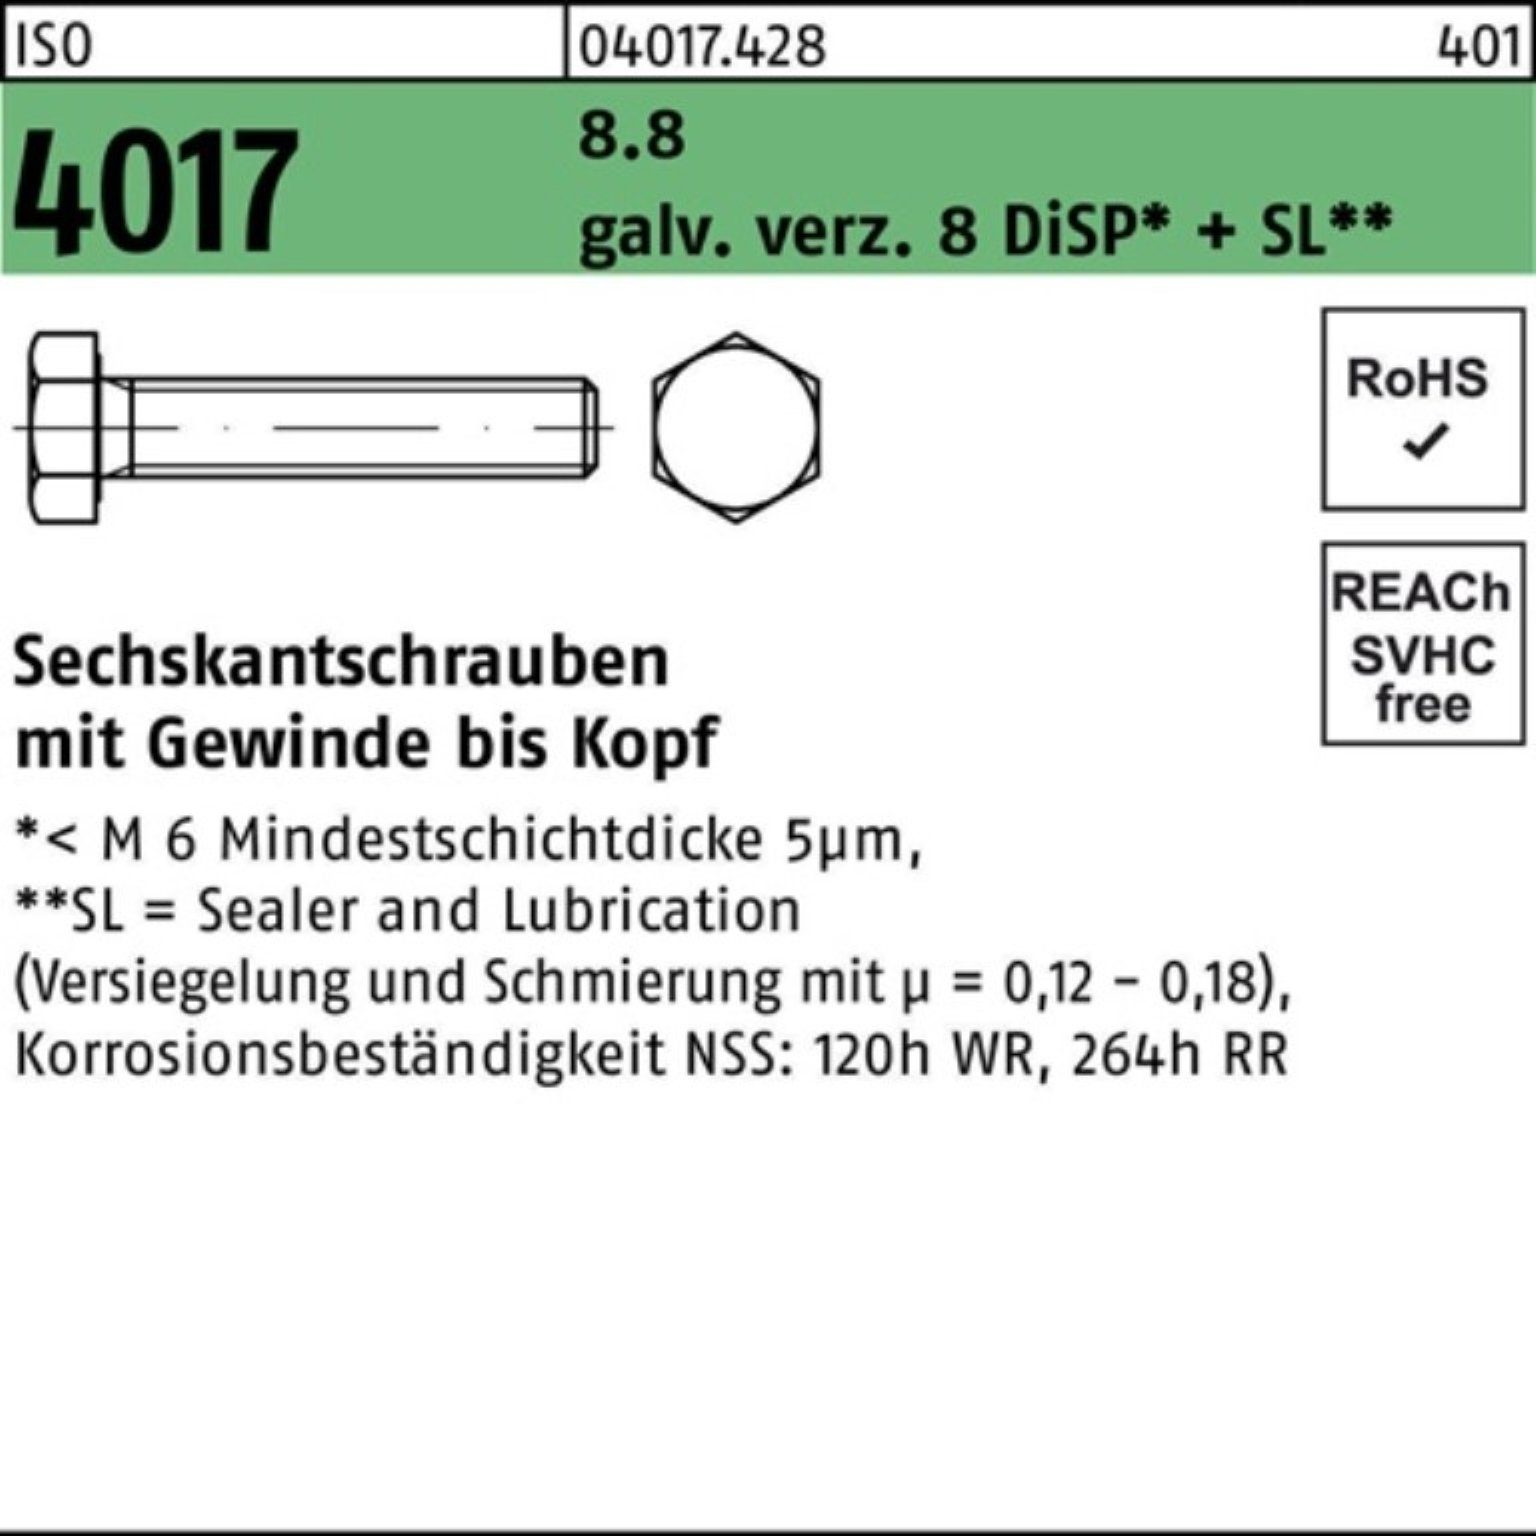 Bufab Sechskantschraube 500er 20 Pack Sechskantschraube 4017 8.8 8 VG M3x ISO galv.verz. DiSP